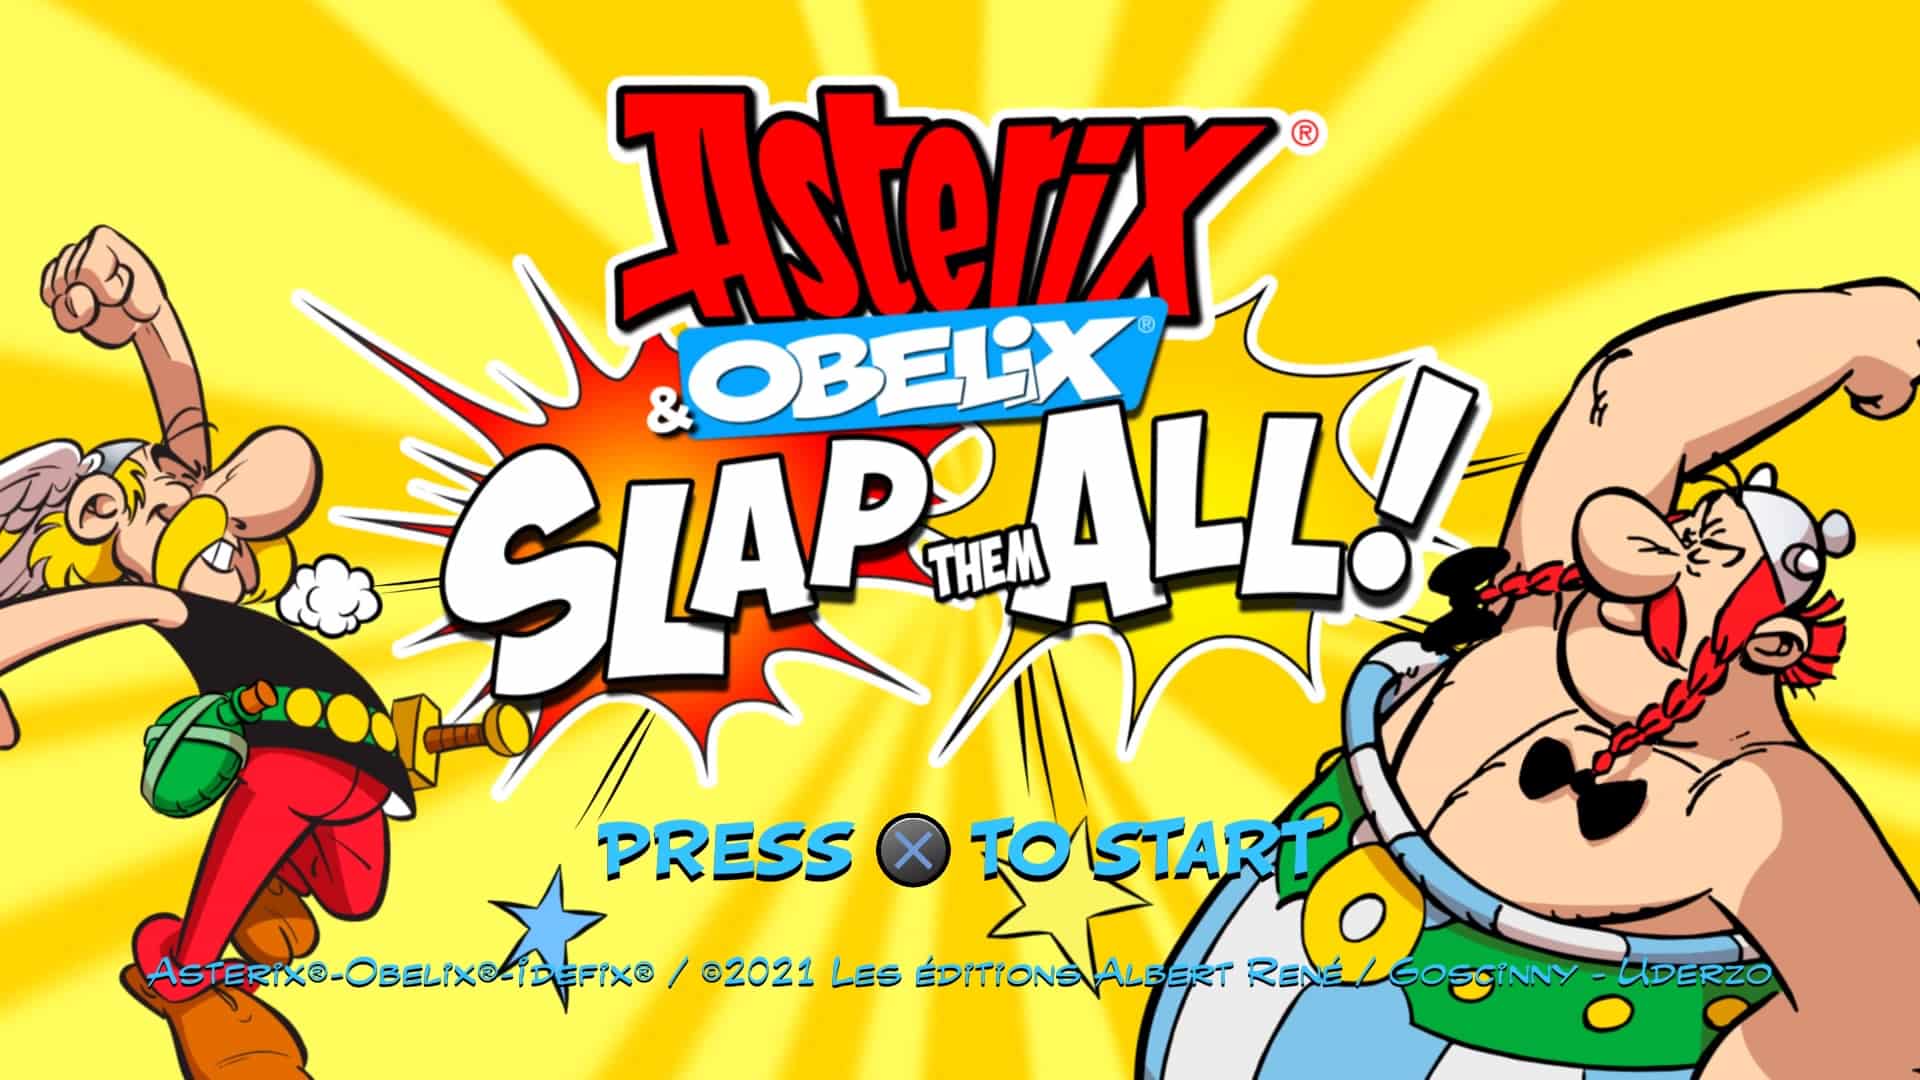 Asterix-_-Obelix-Slap-Them